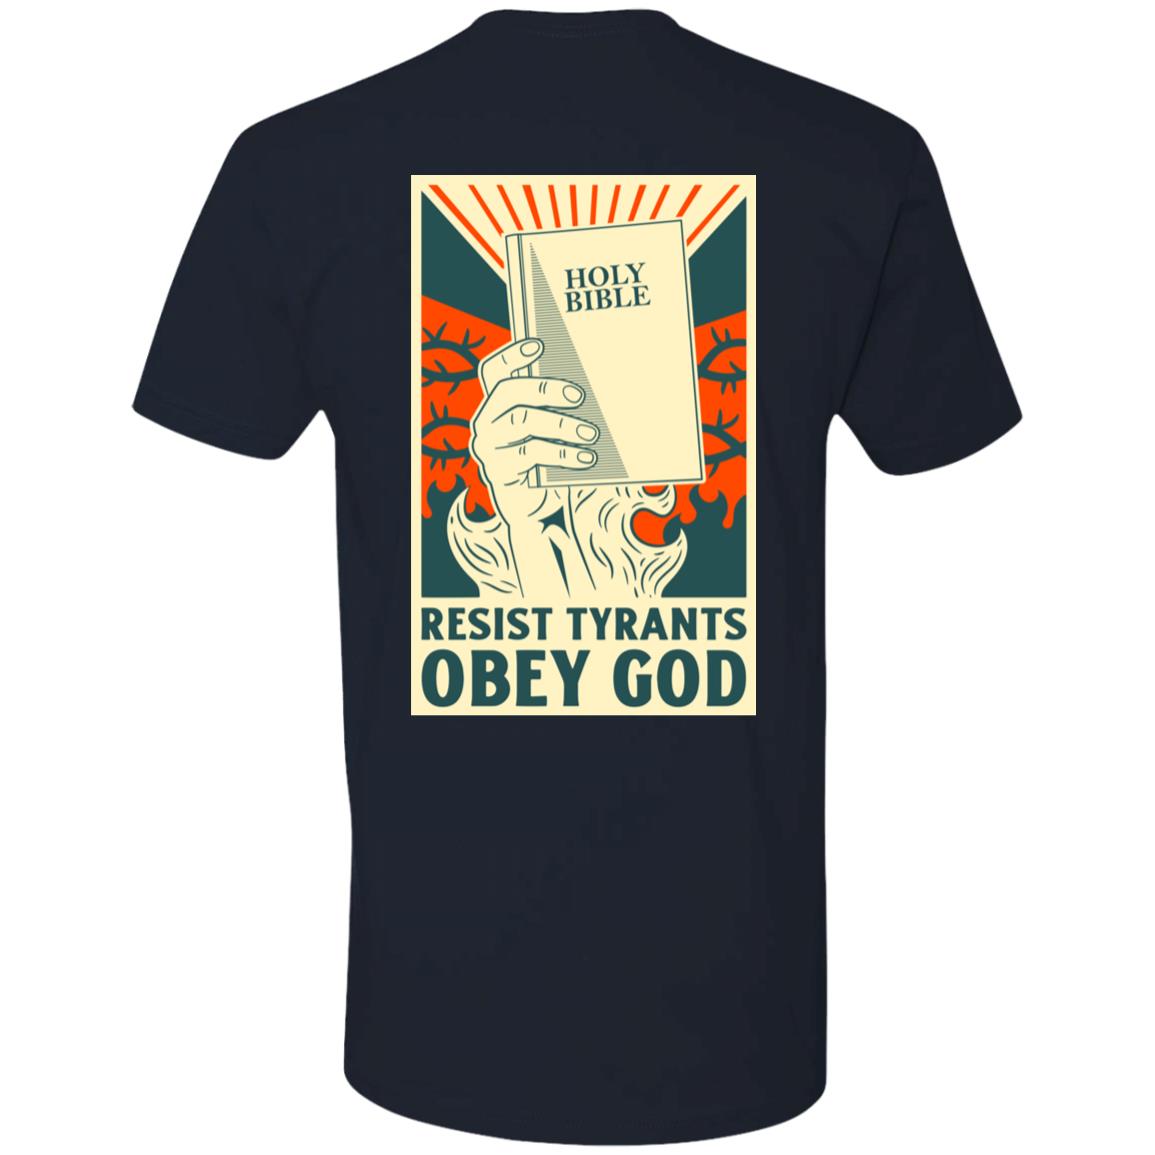 Resist Tyrants, Obey God - Bible (Unisex Tee)